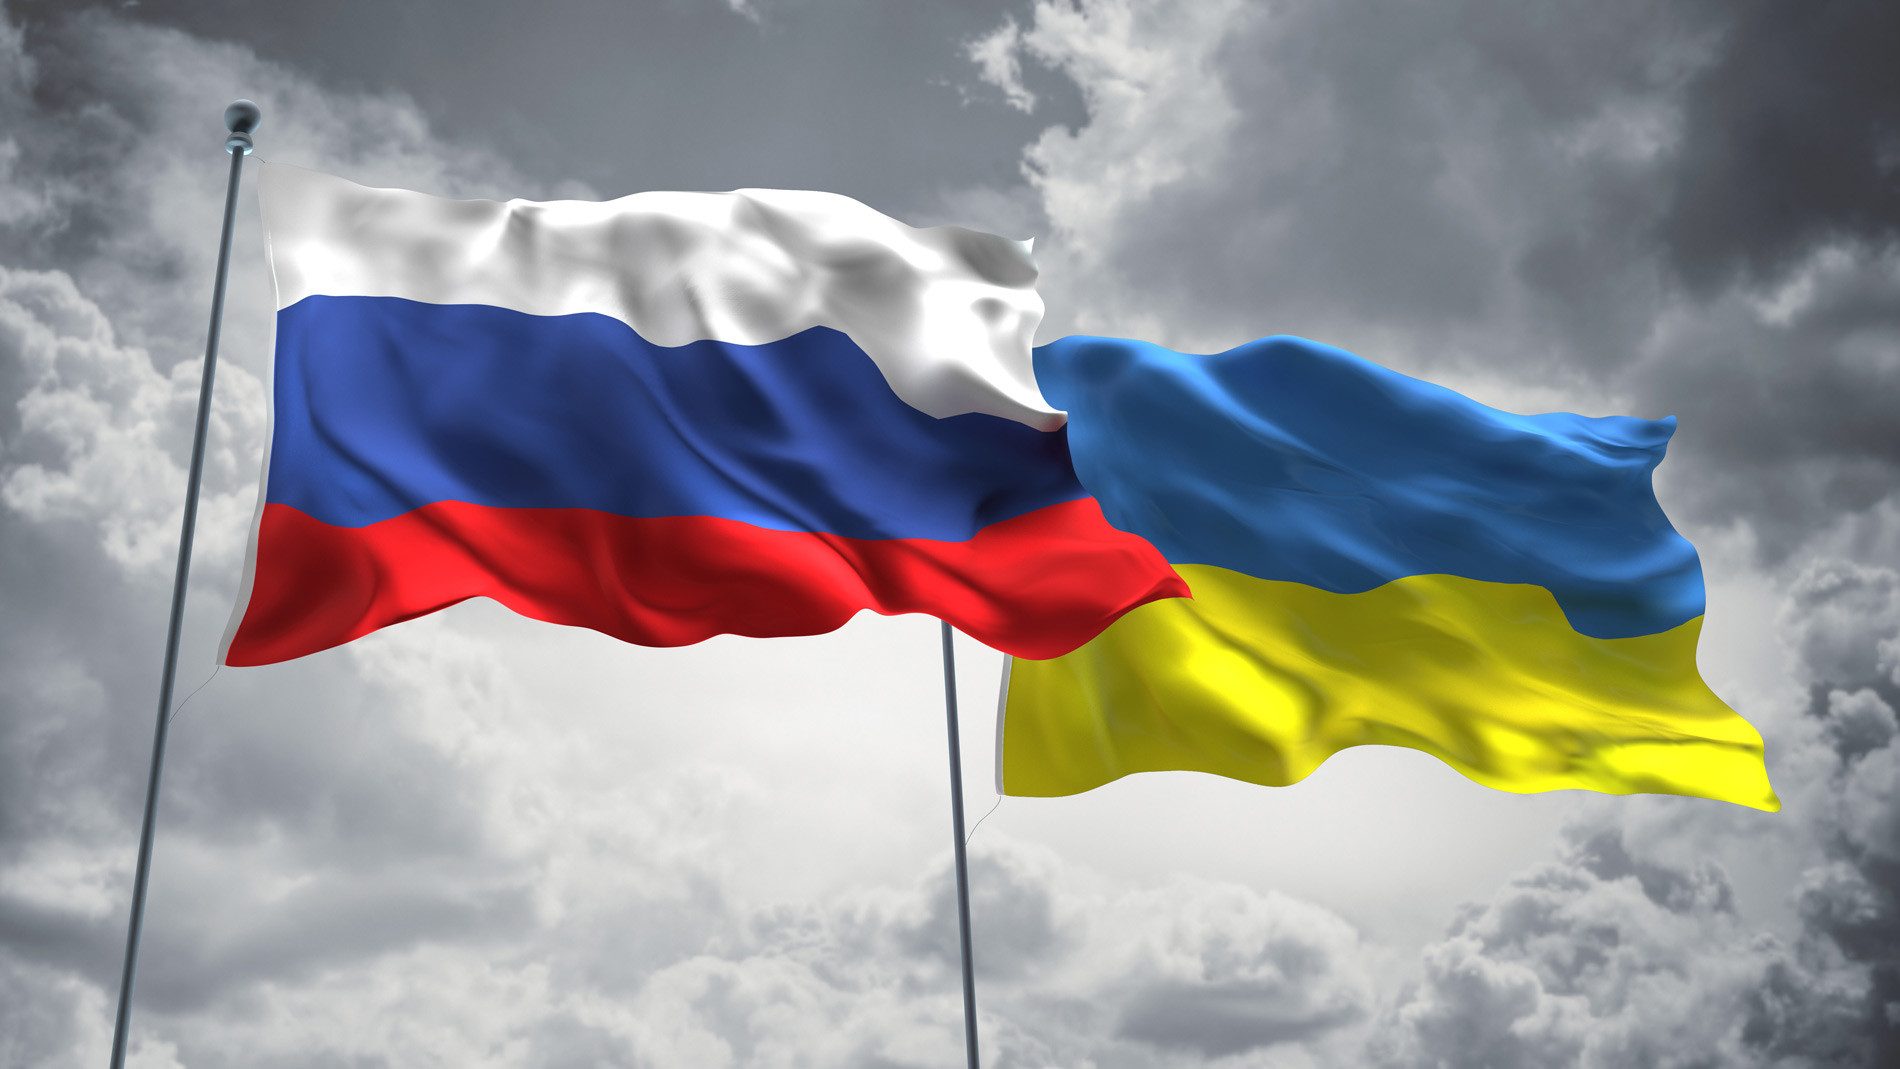 Rusiya-Ukrayna gərginliyi enerji qiymətlərini artırır